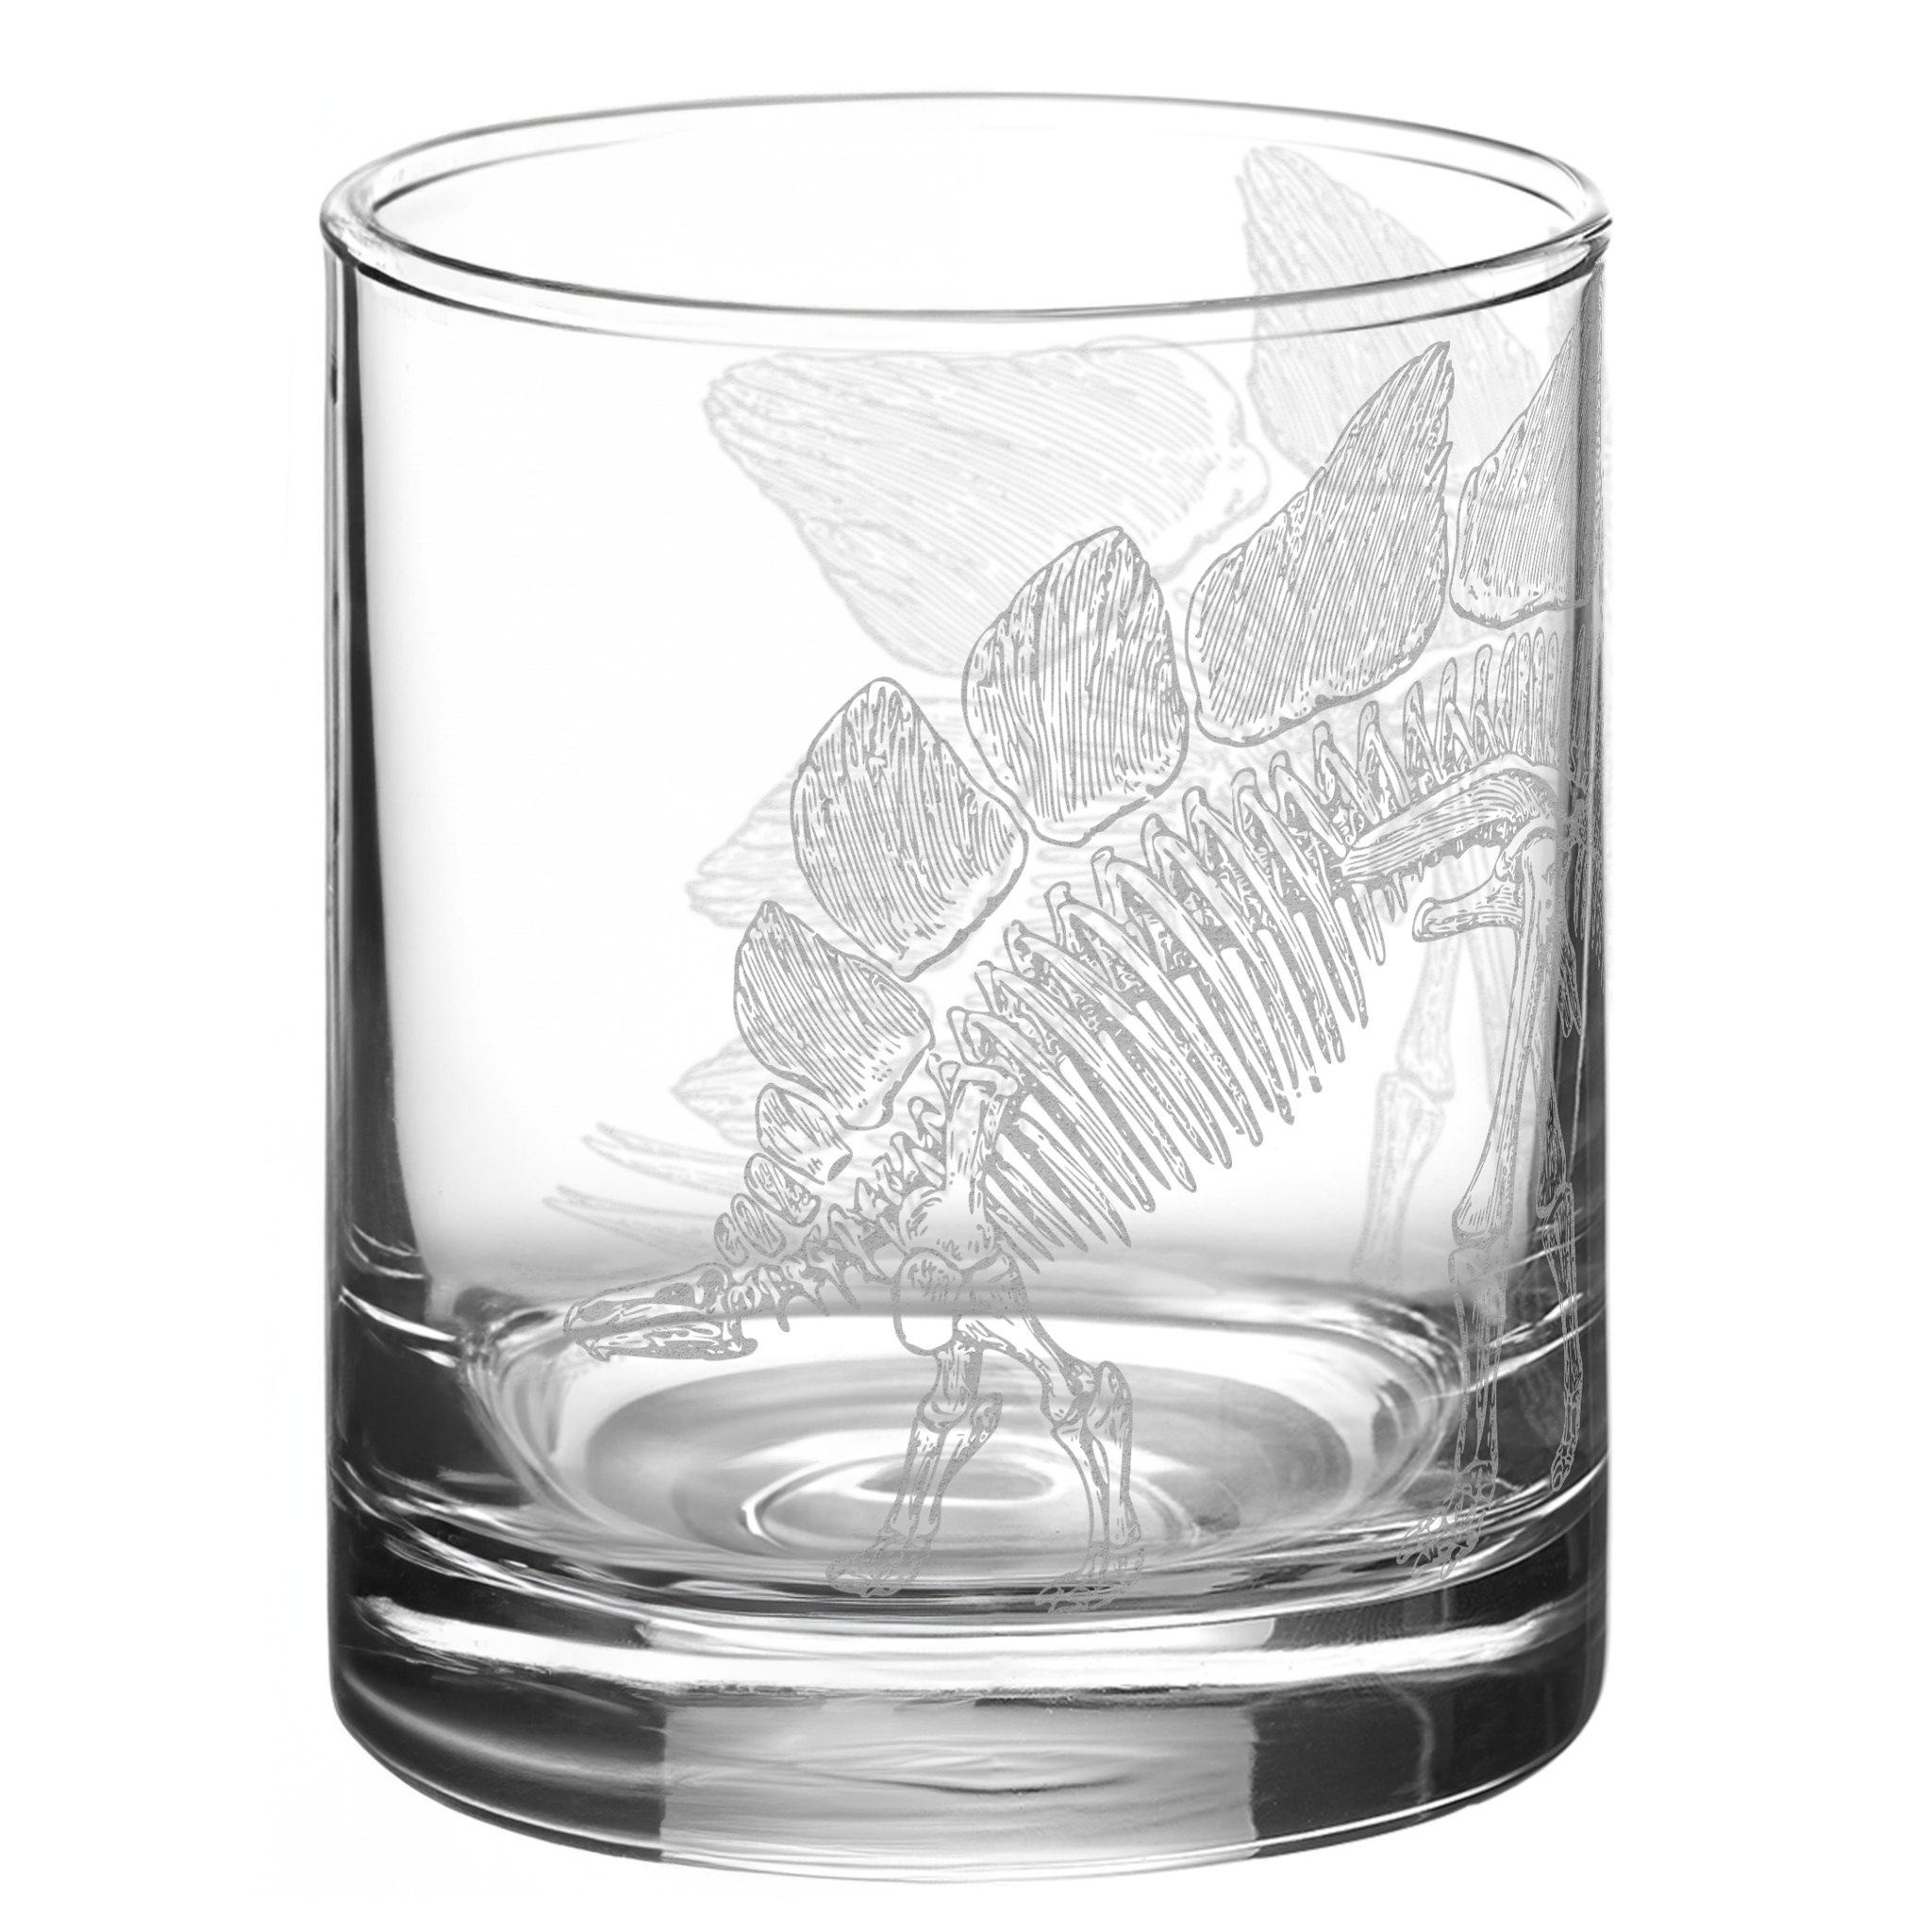 STEGOSAURUS SKELETON Whiskey Glass